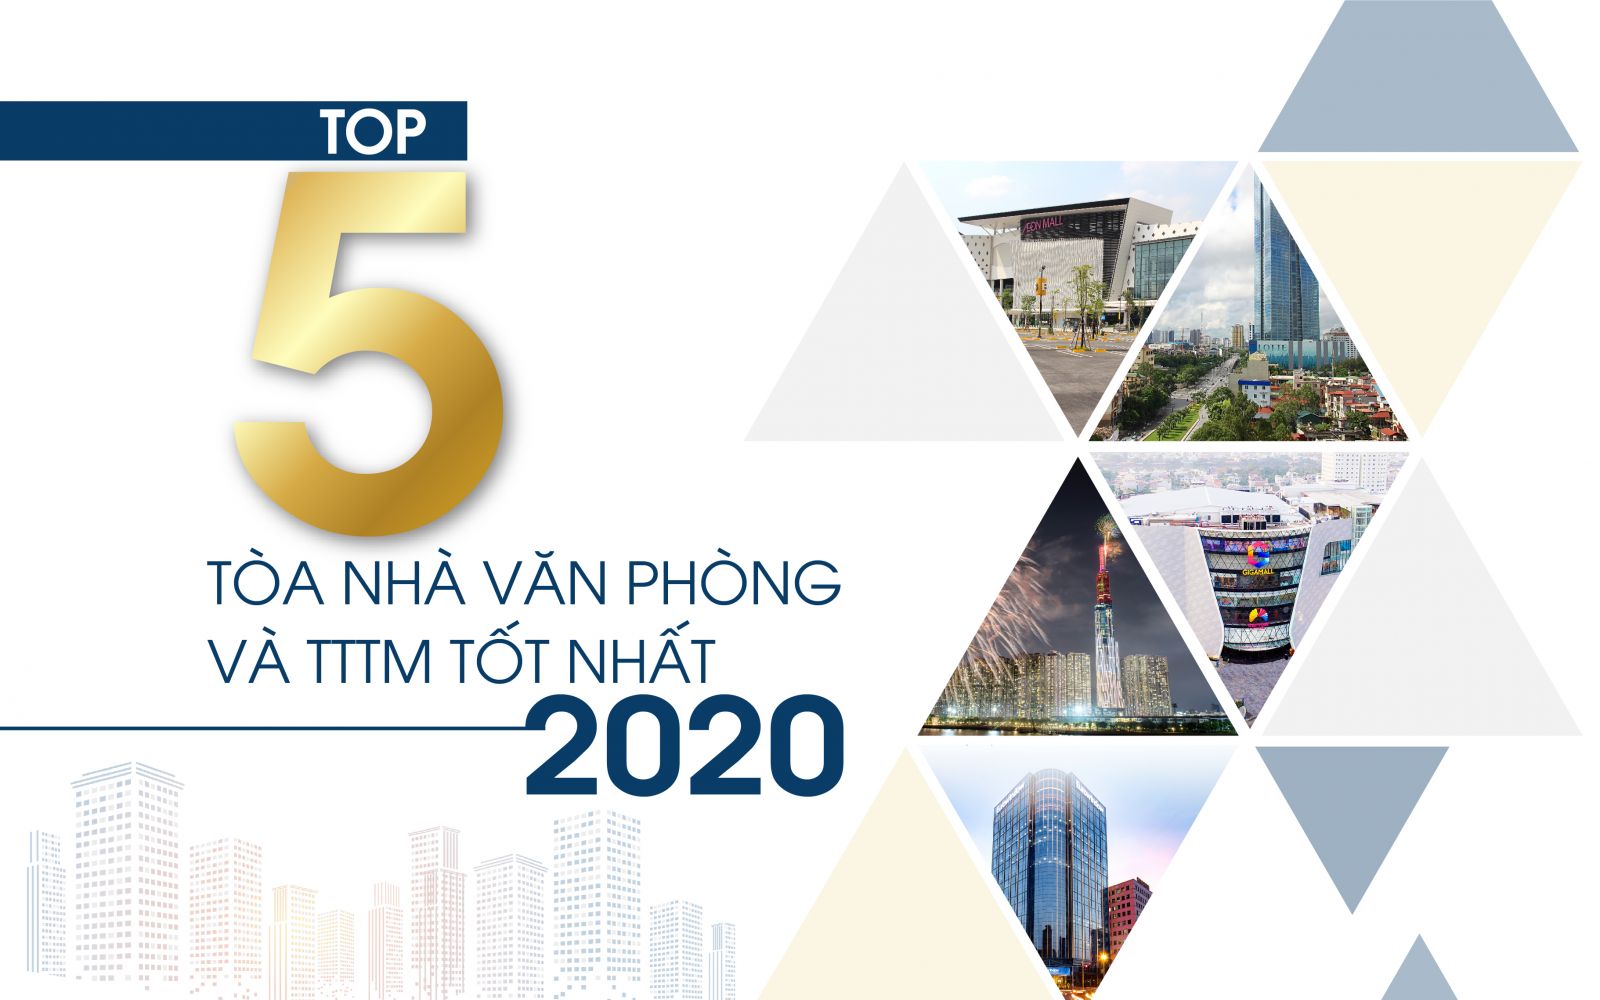 Top 5 tòa nhà văn phòng và TTTM tốt nhất năm 2020